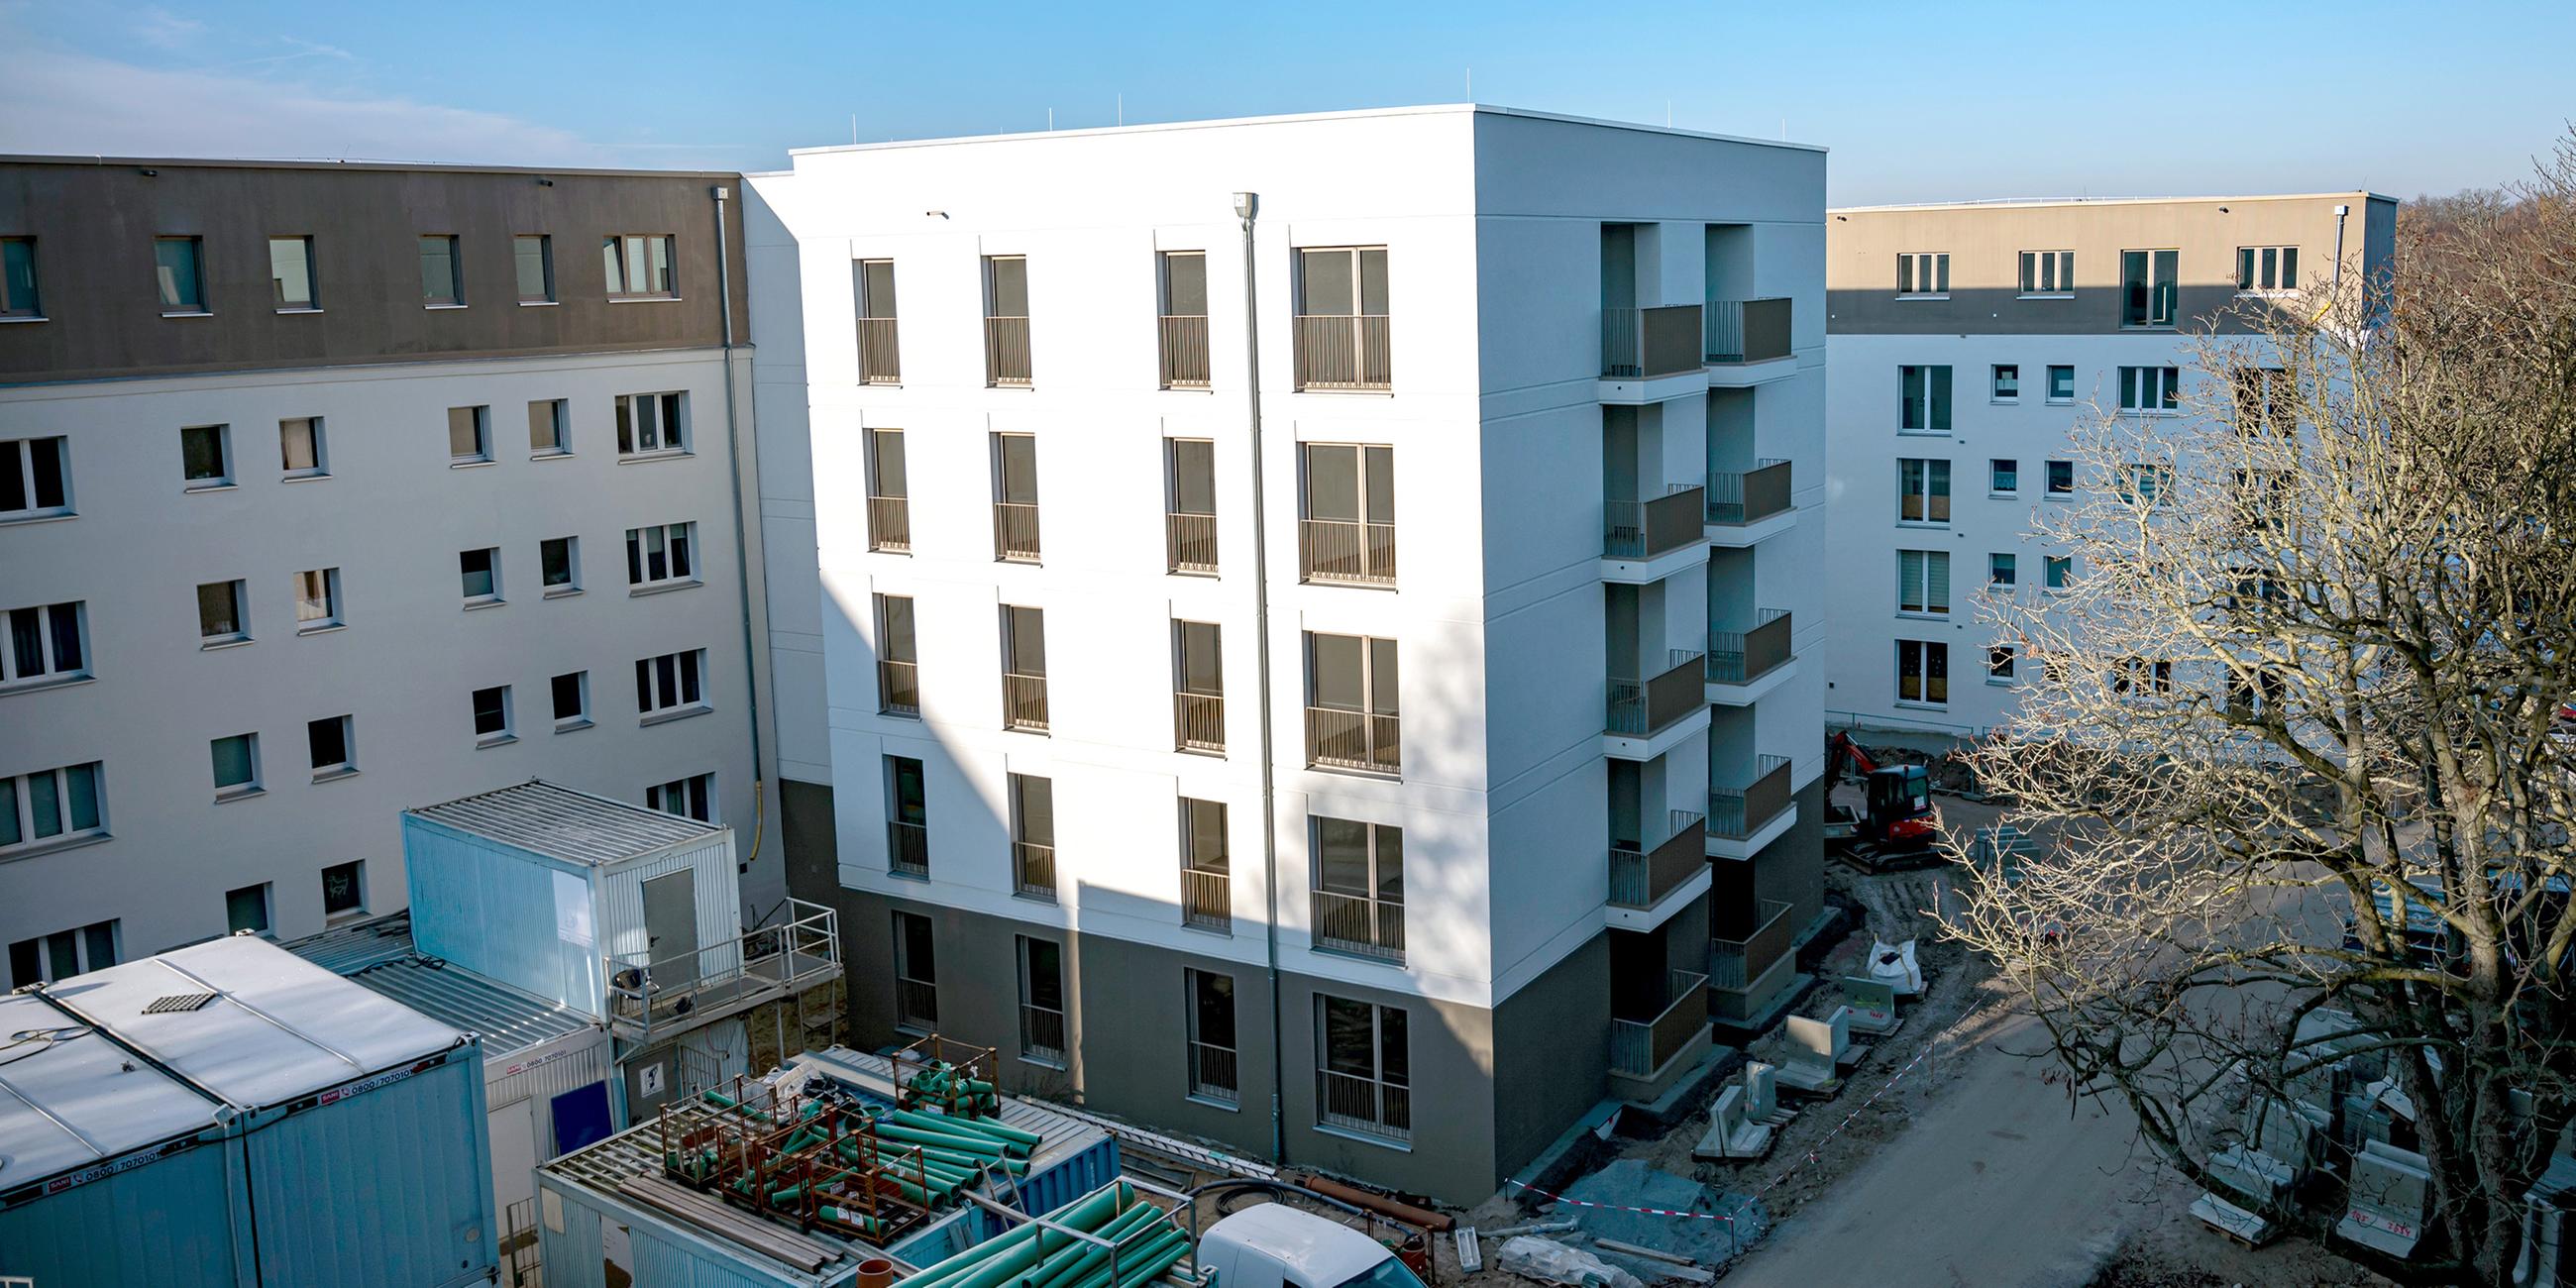 Bauprojekt für neue Wohnungen in Berlin-Pankow